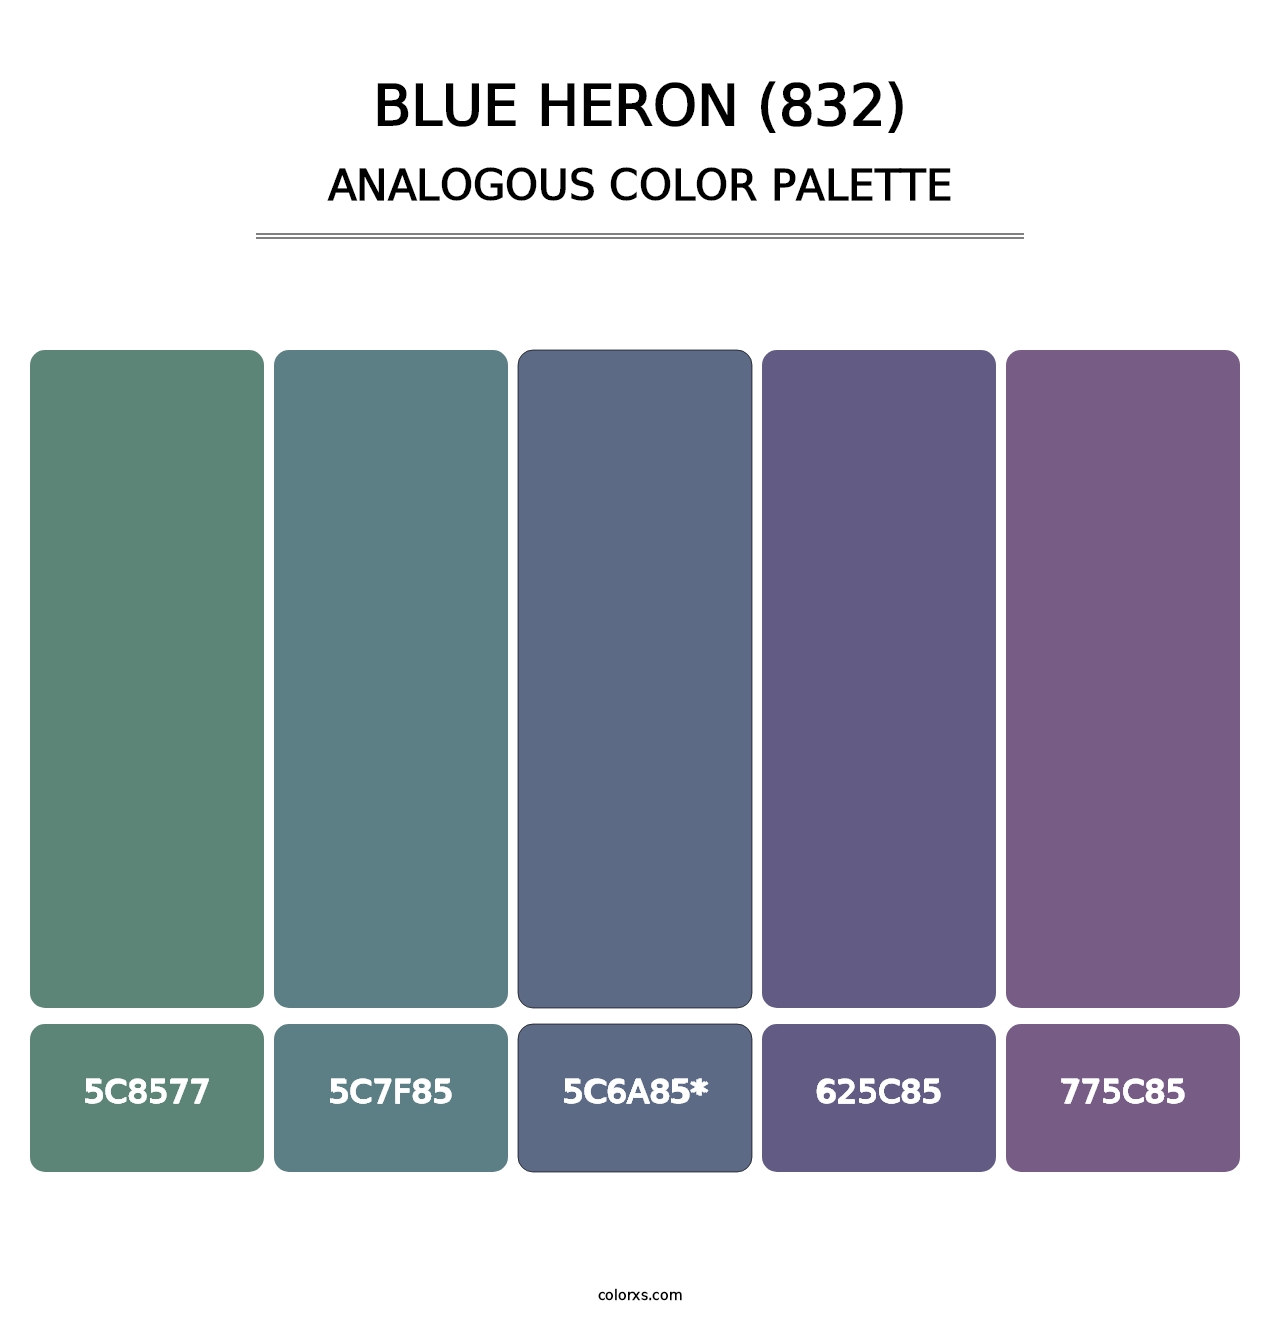 Blue Heron (832) - Analogous Color Palette